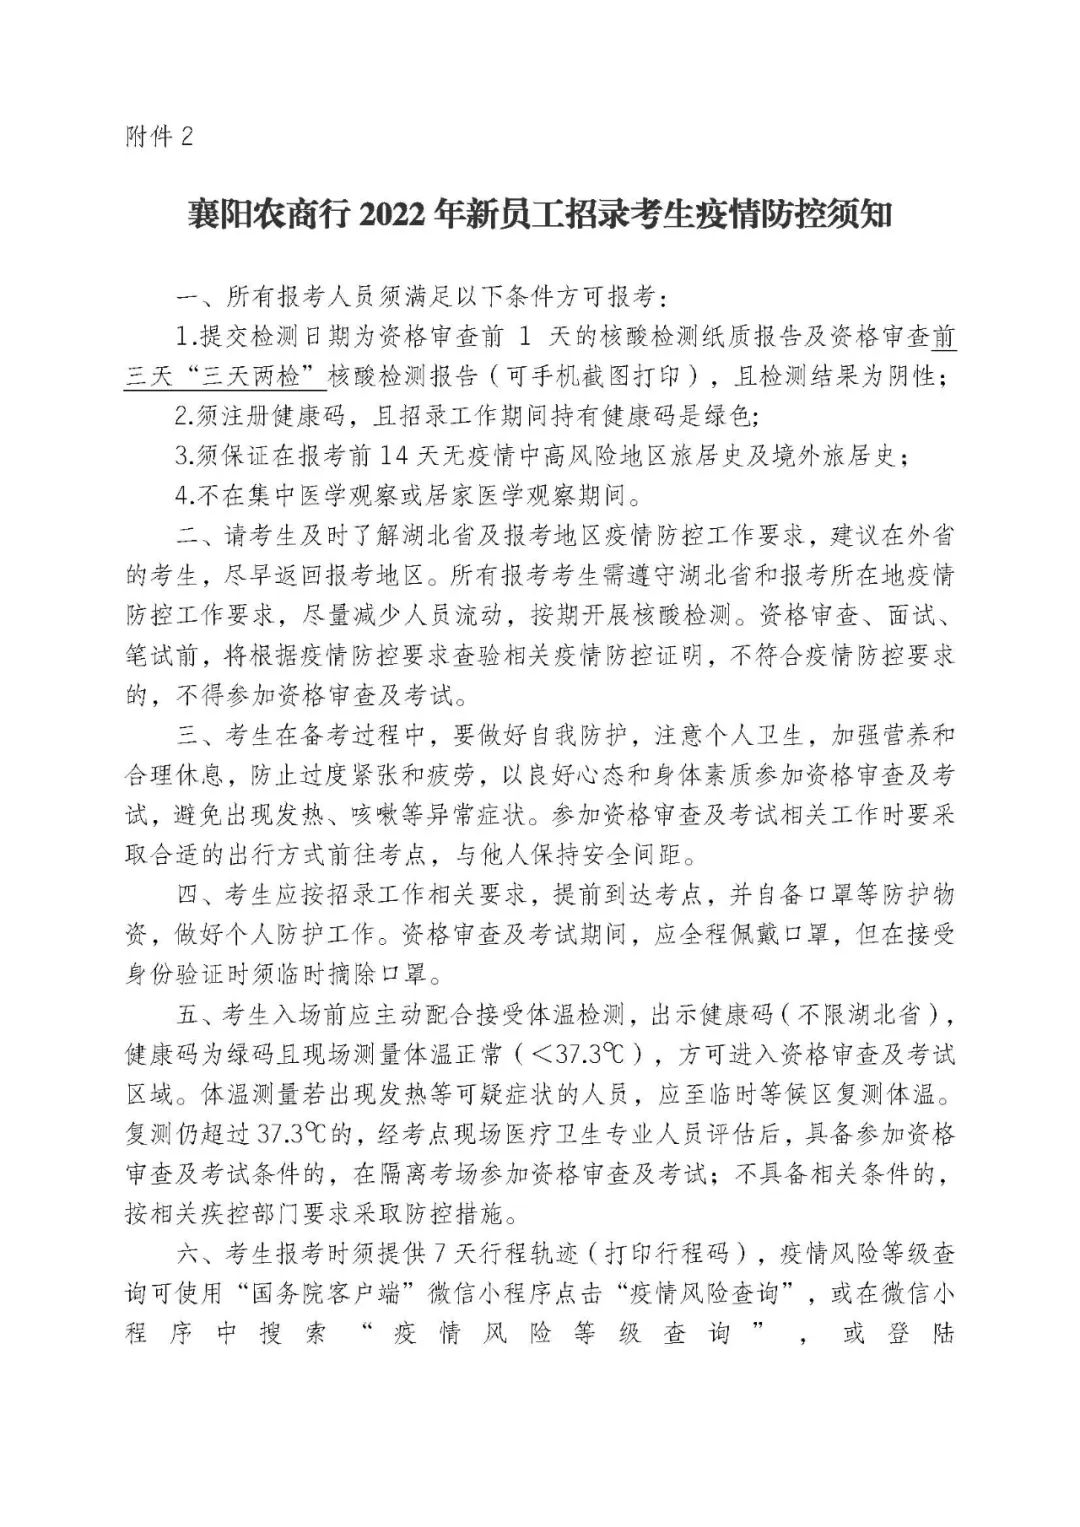 2022襄阳农商行关于开展新员工招录异地返回人员资格审查的通知图3